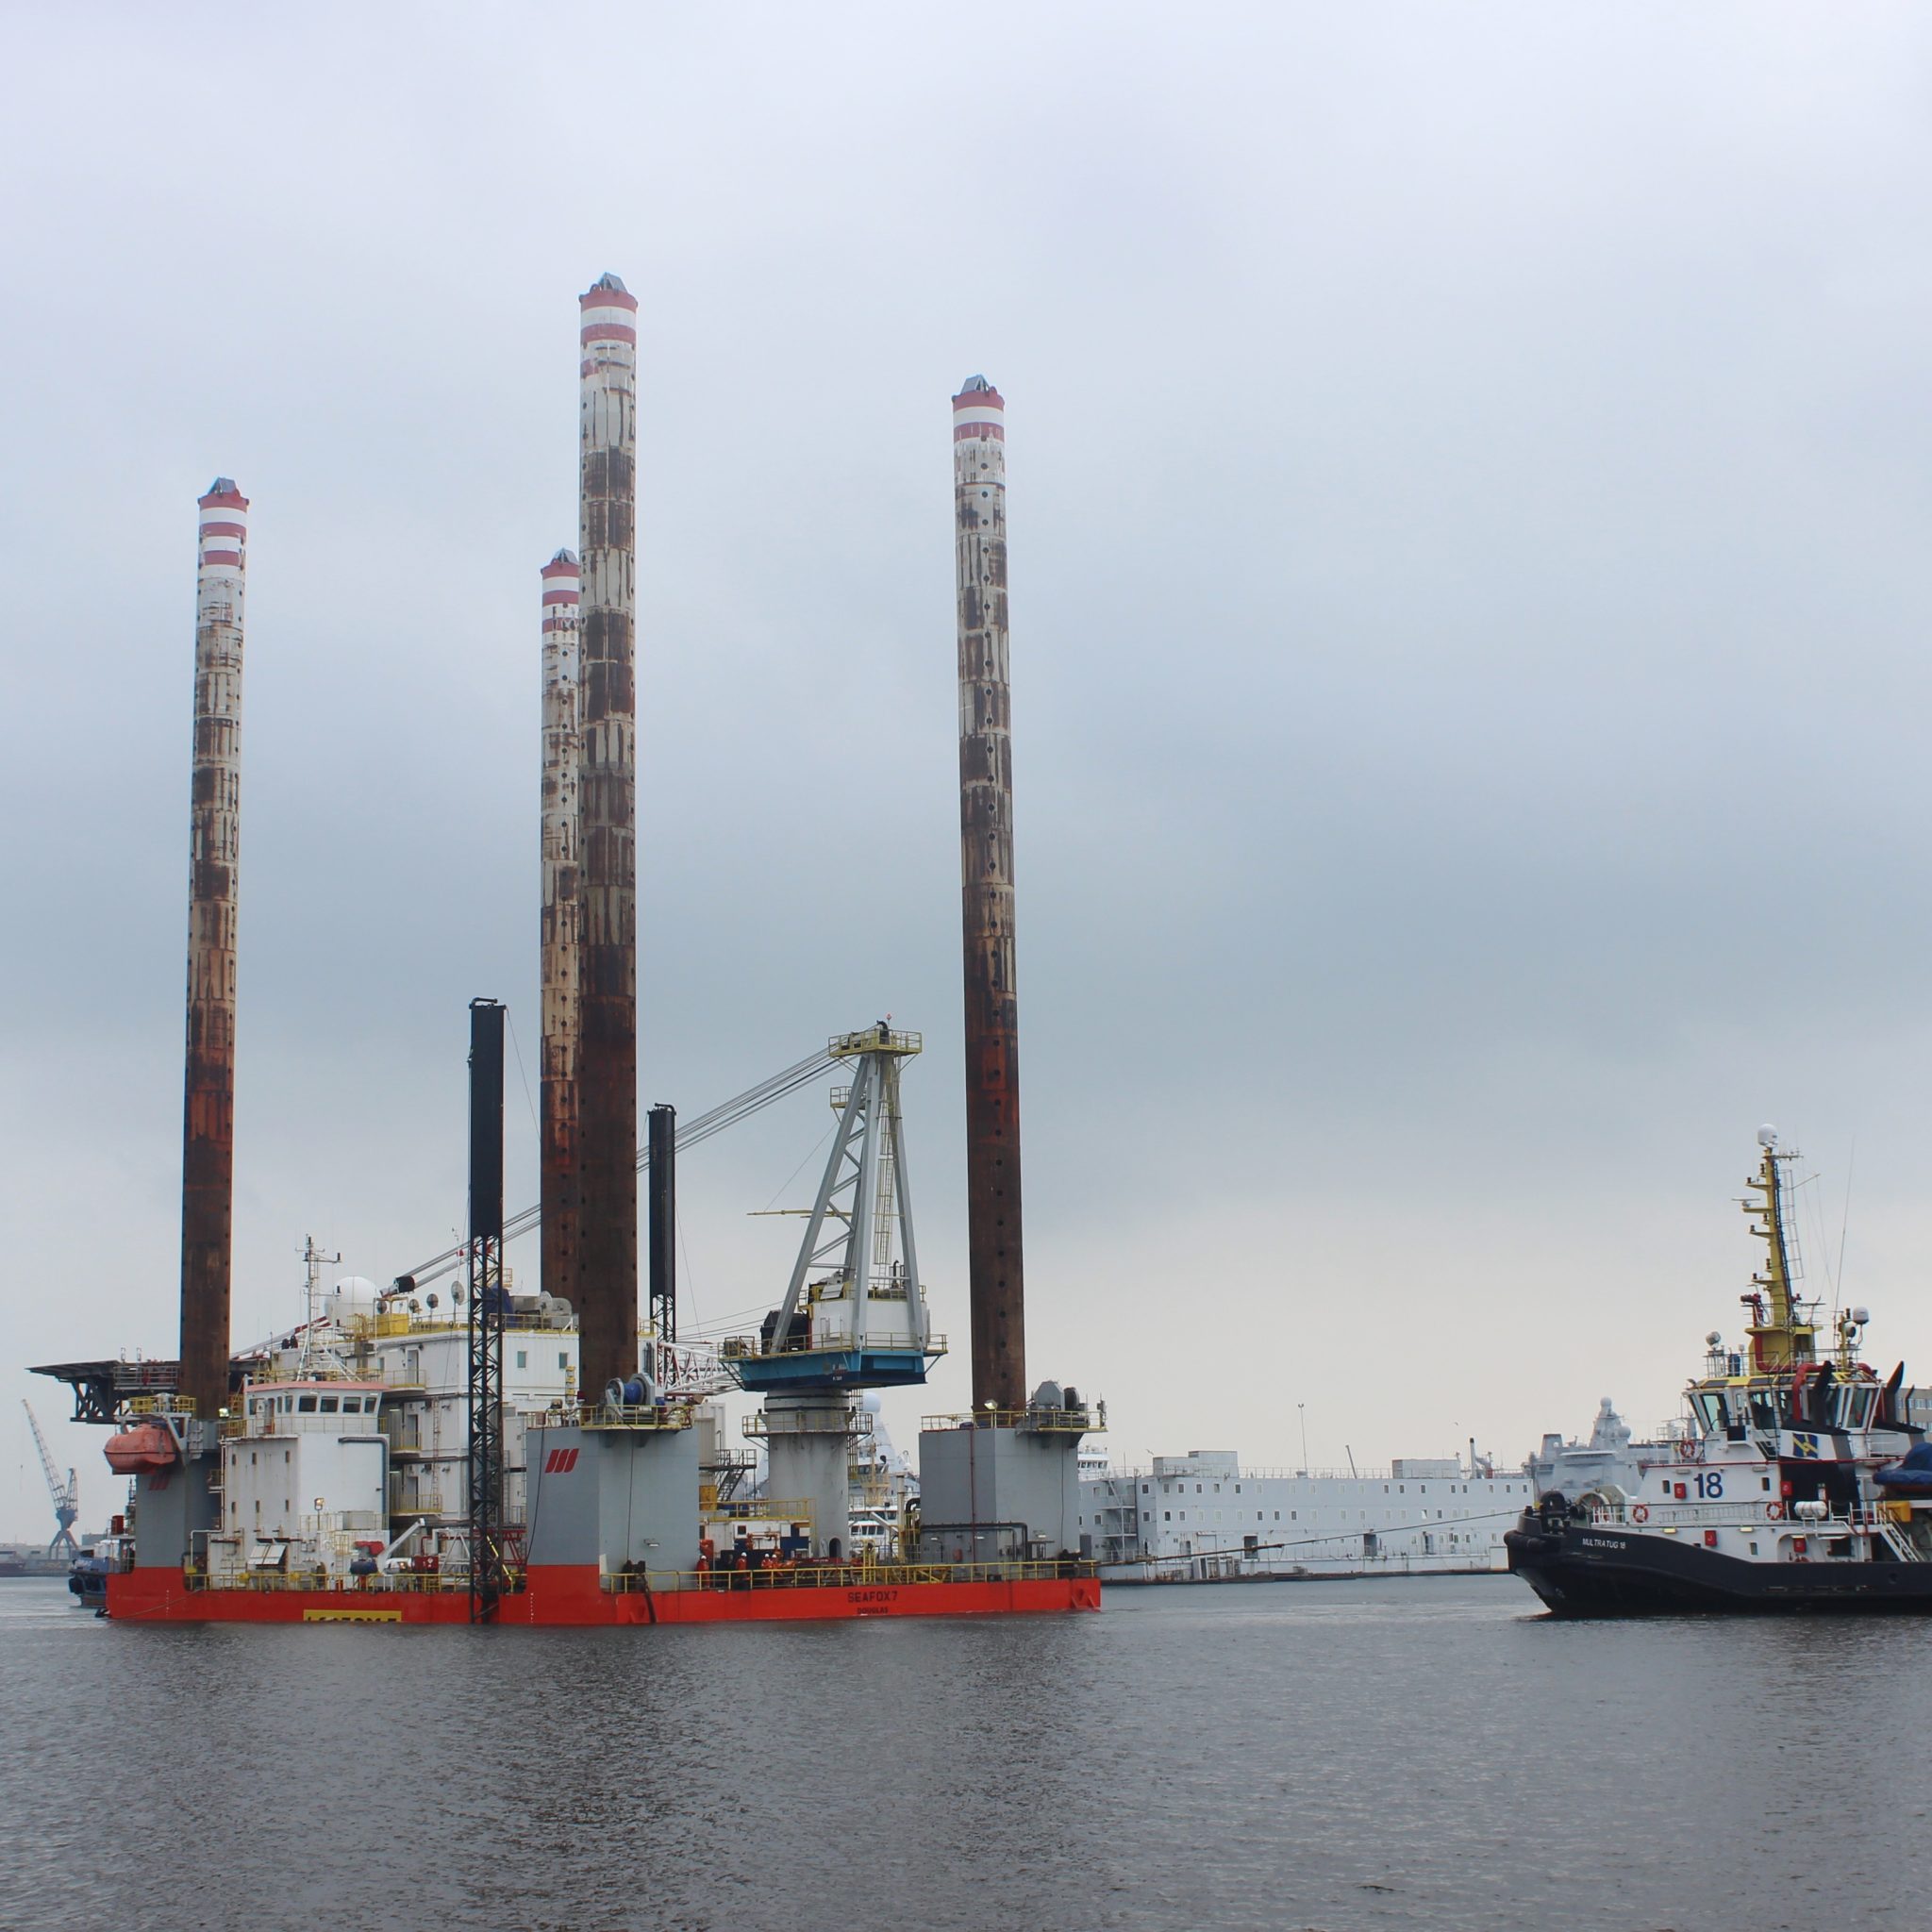 De Seafox 7 wordt de buitenhaven van Den Helder binnengesleept. (Foto Paul Schaap)